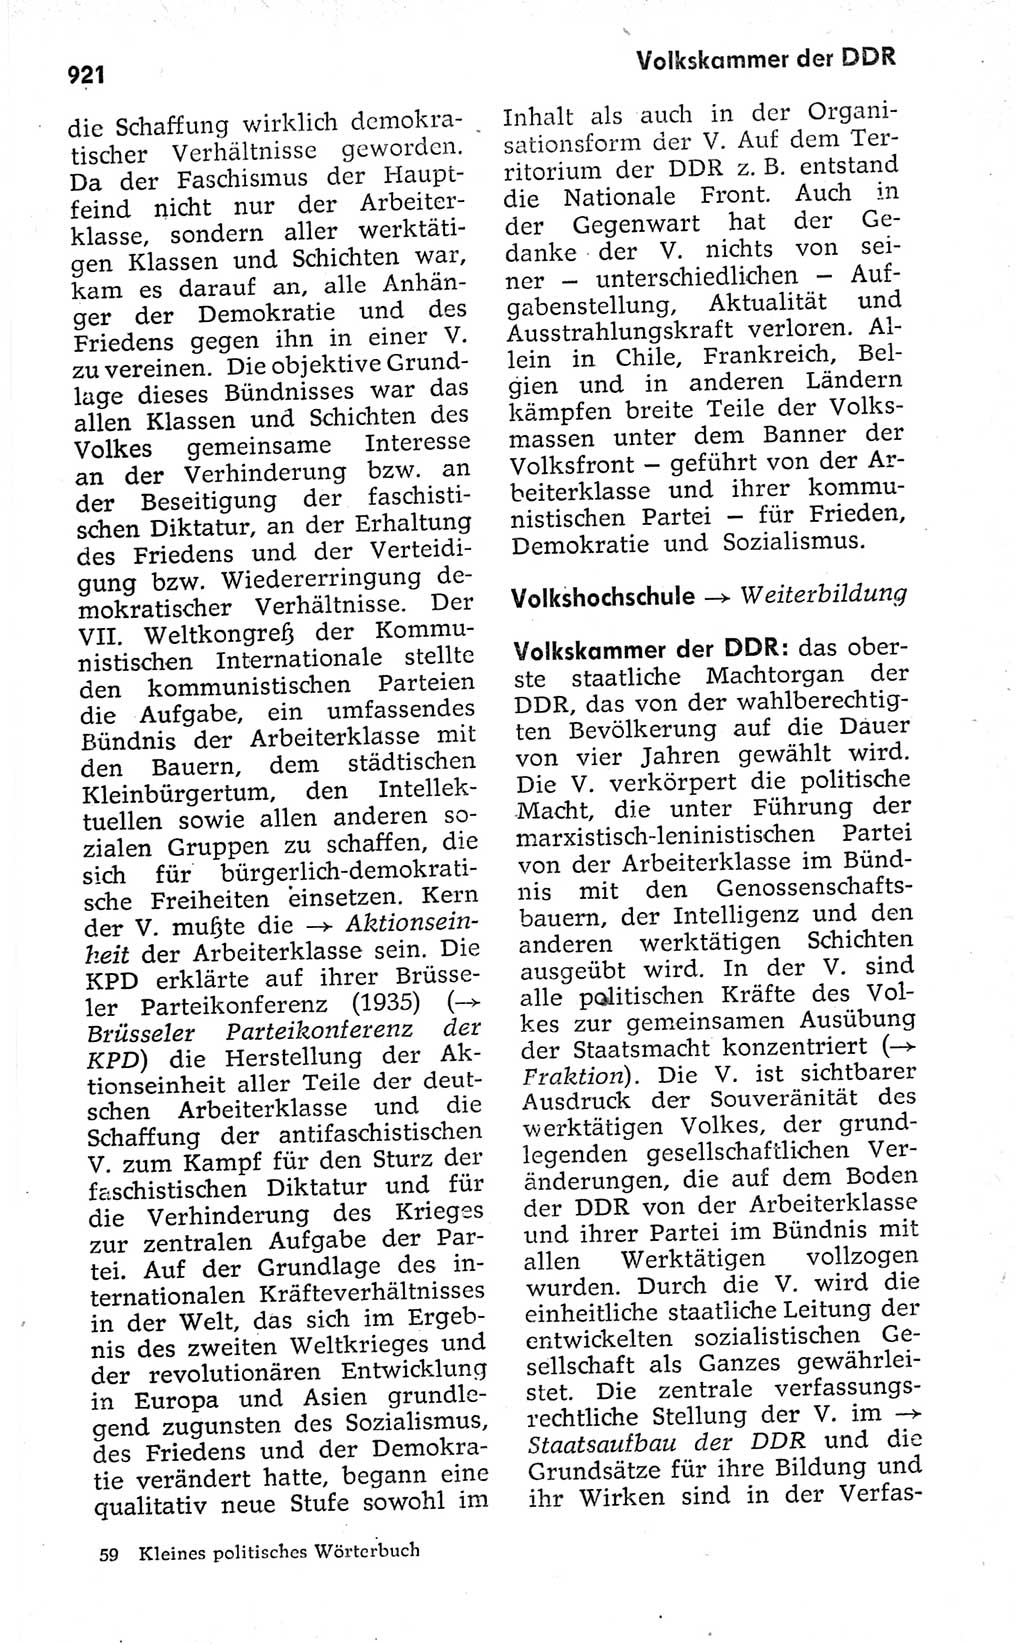 Kleines politisches Wörterbuch [Deutsche Demokratische Republik (DDR)] 1973, Seite 921 (Kl. pol. Wb. DDR 1973, S. 921)